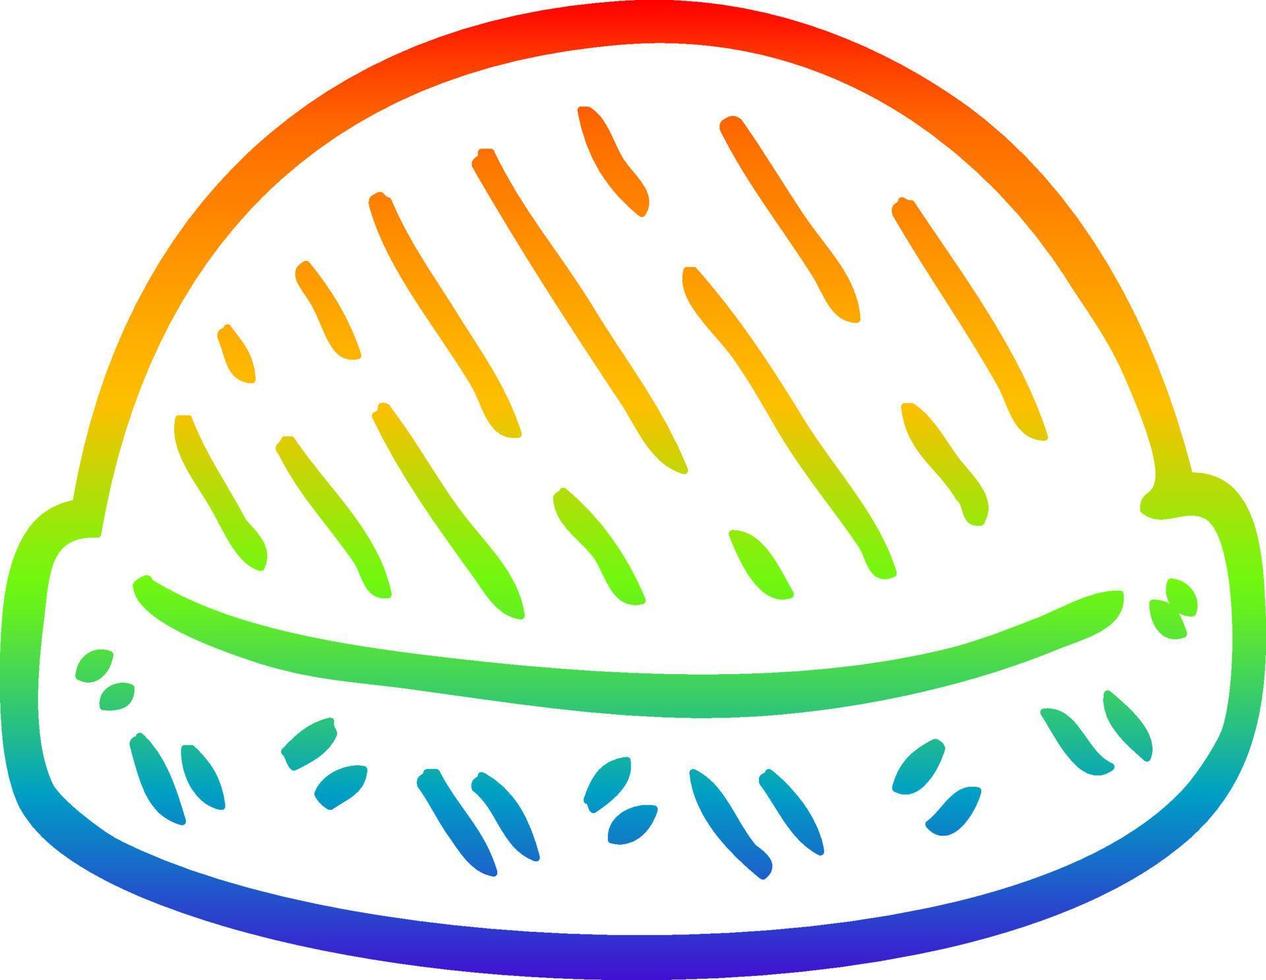 rainbow gradient line drawing cartoon winter hats vector